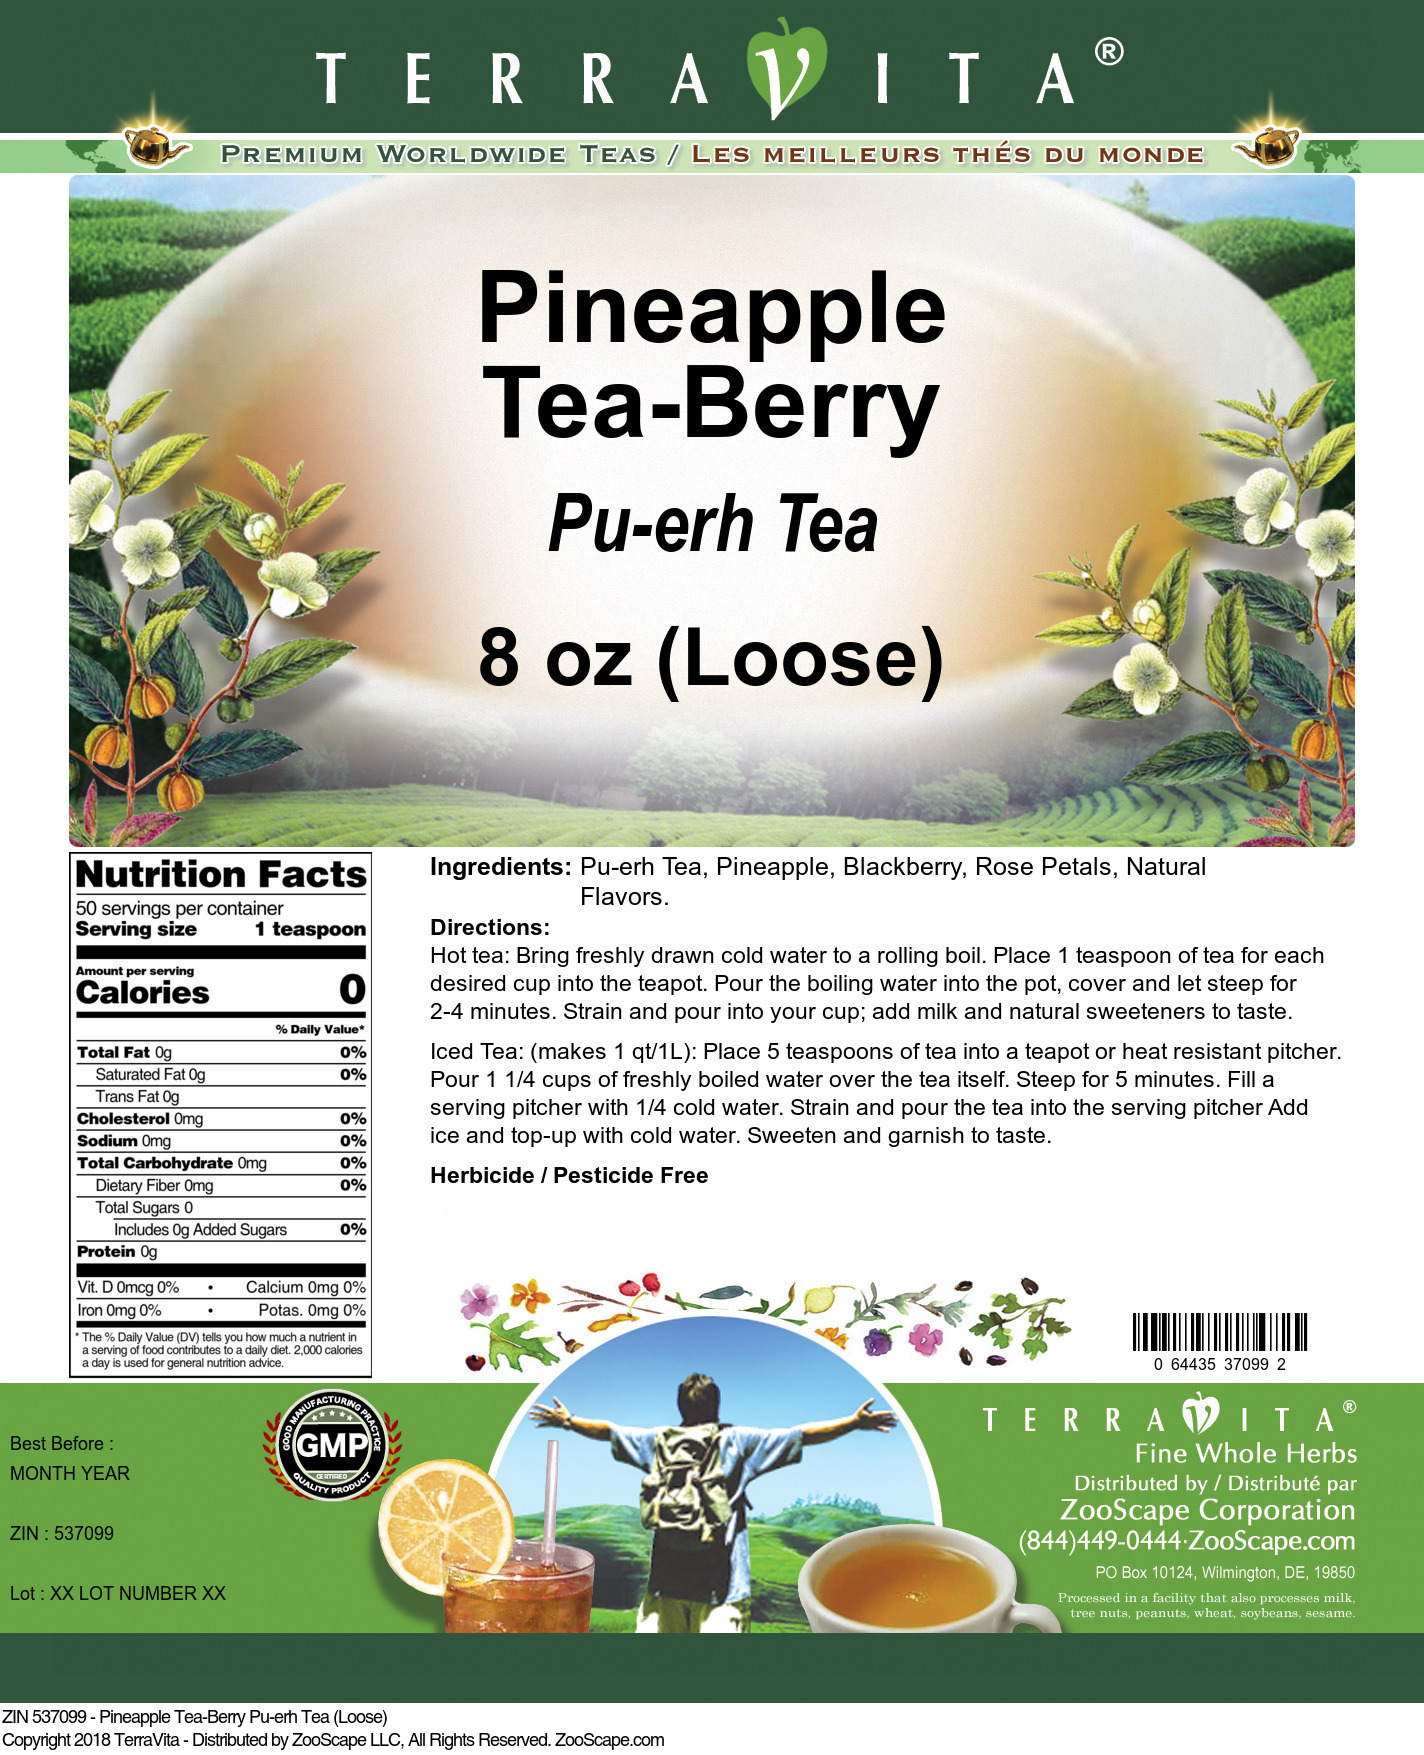 Pineapple Tea-Berry Pu-erh Tea (Loose) - Label